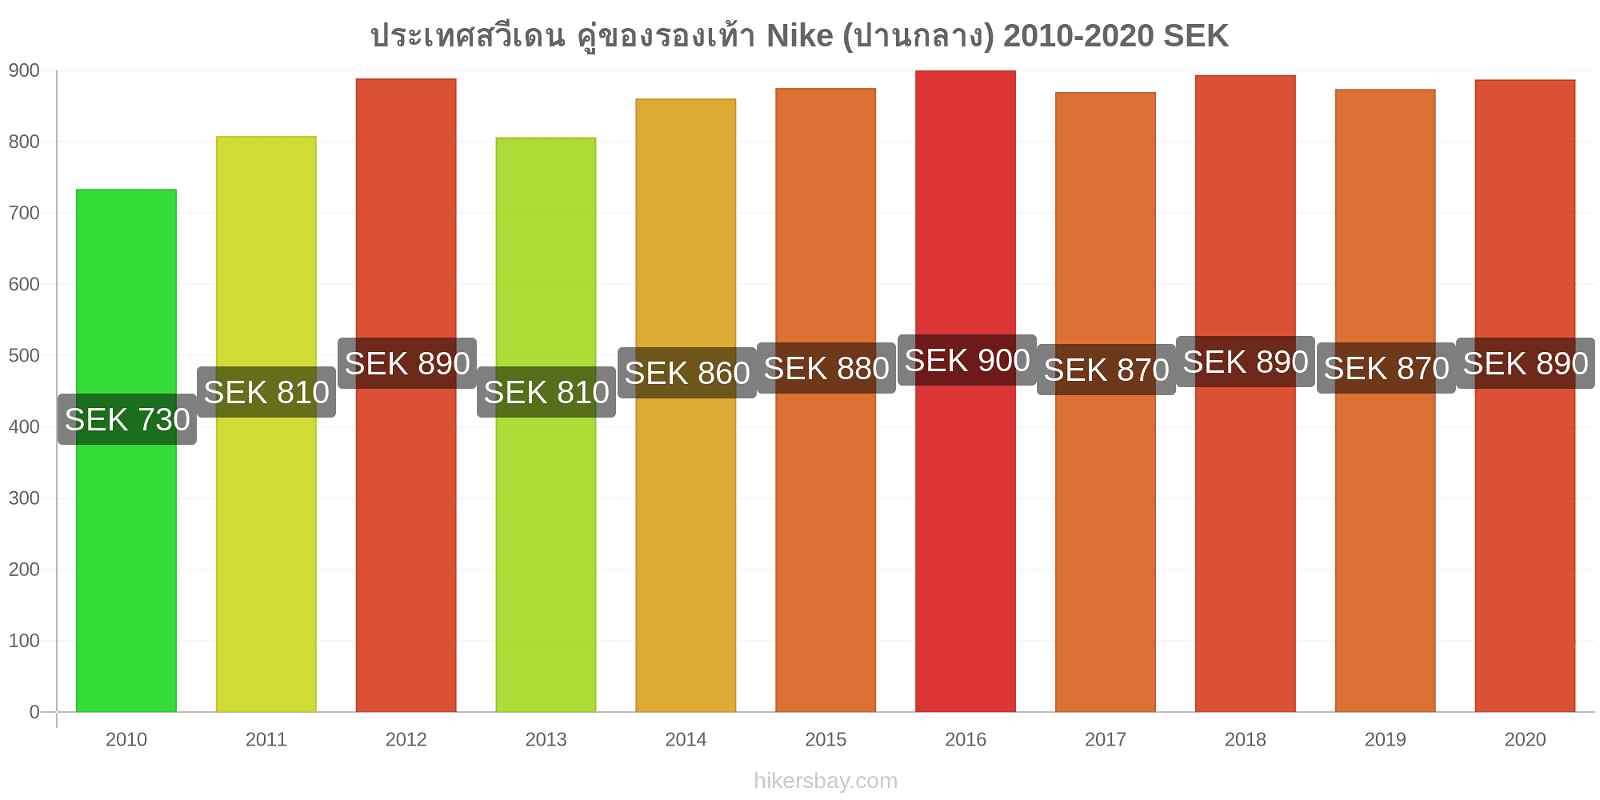 ประเทศสวีเดน การเปลี่ยนแปลงราคา คู่ของรองเท้า Nike (ปานกลาง) hikersbay.com